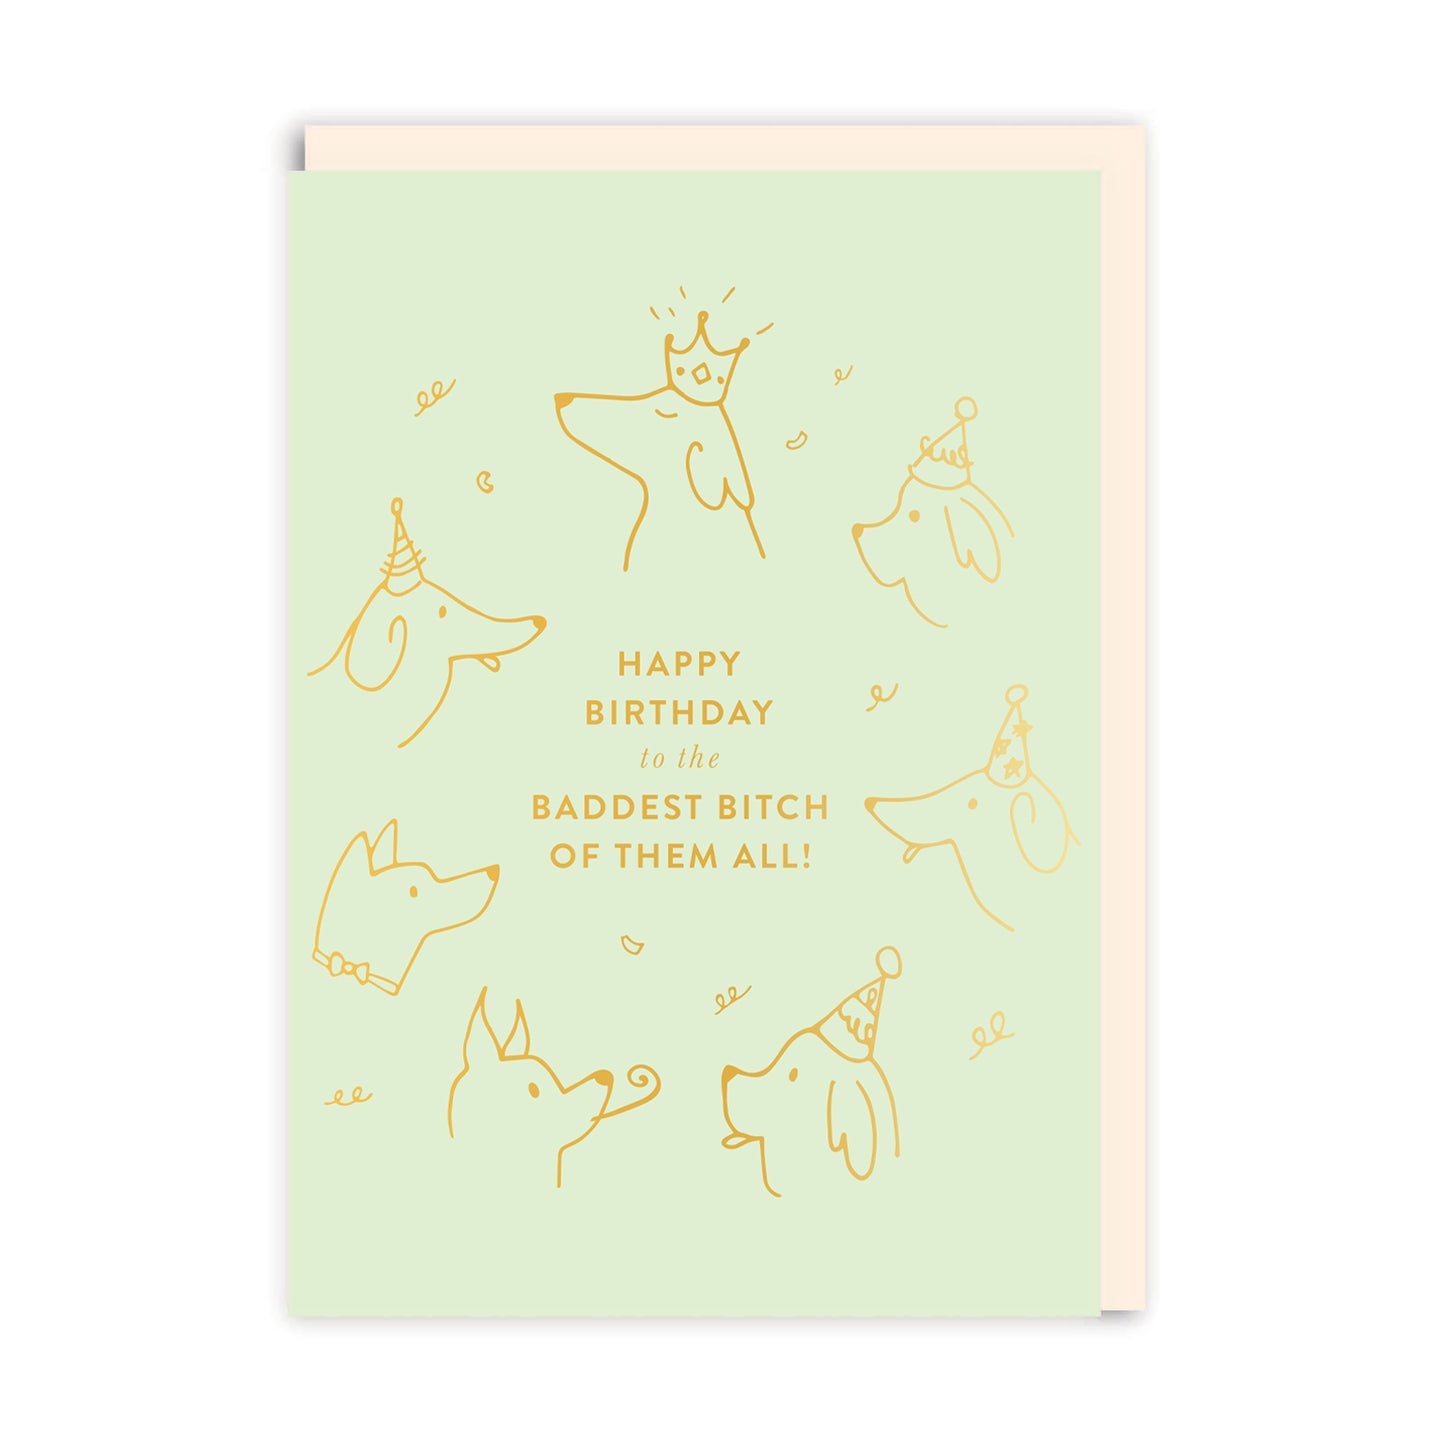 Baddest B*tch Birthday Greeting Card